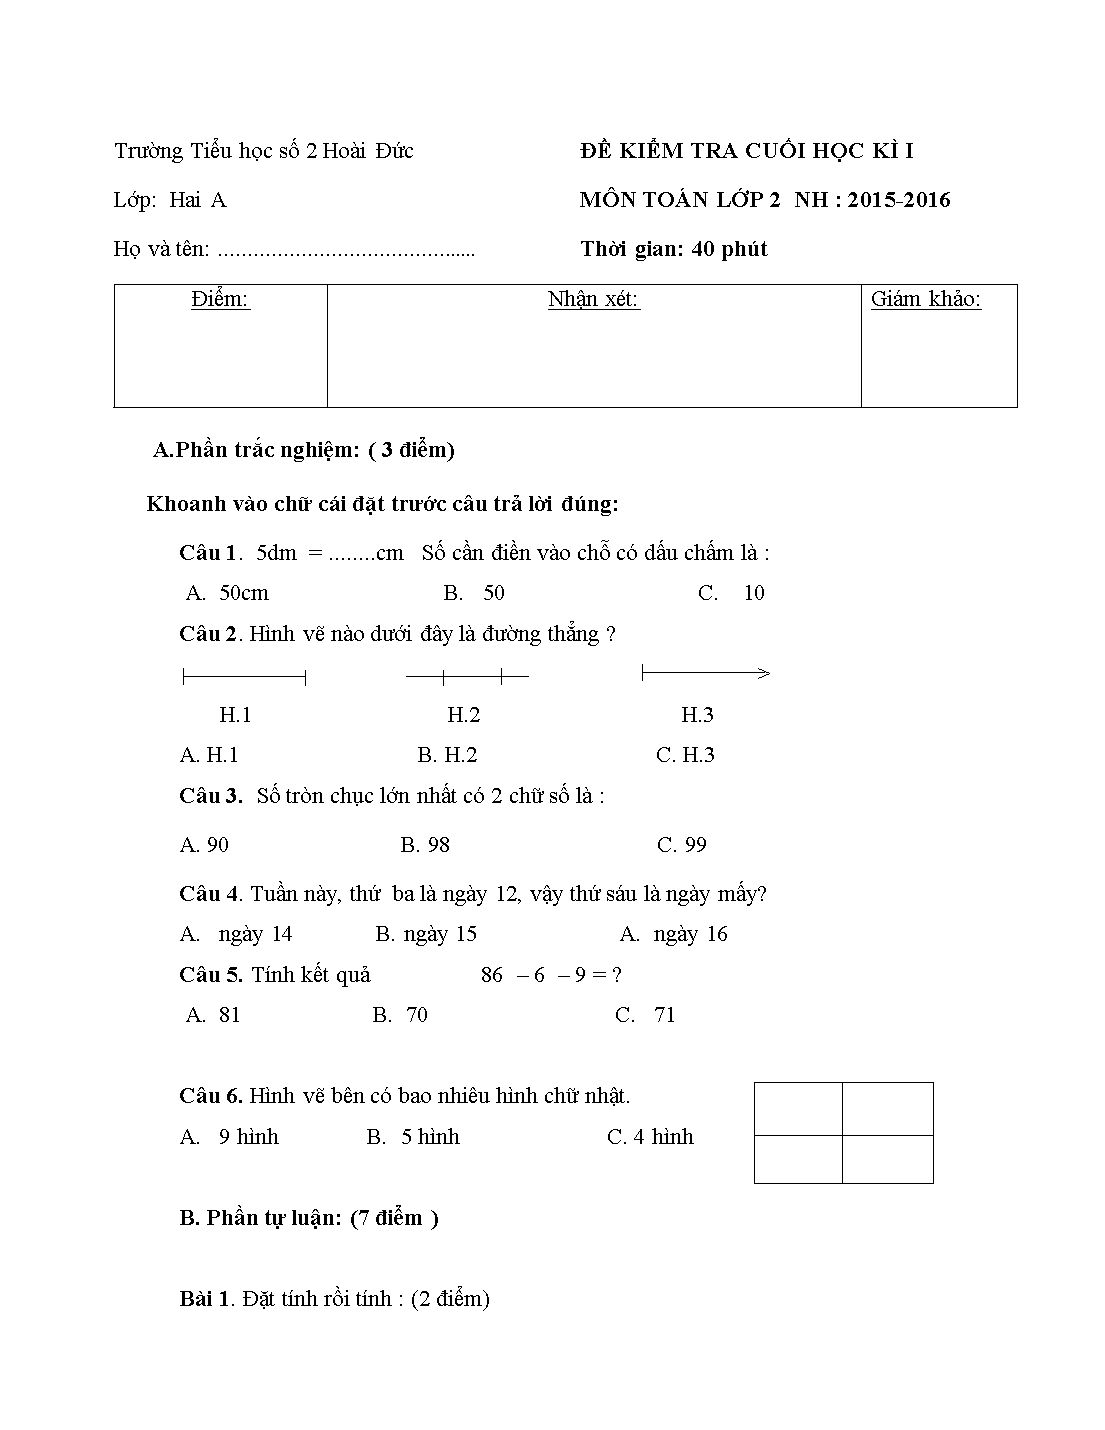 Đề kiểm tra cuối học kì I - Môn: Toán lớp 2 trang 1